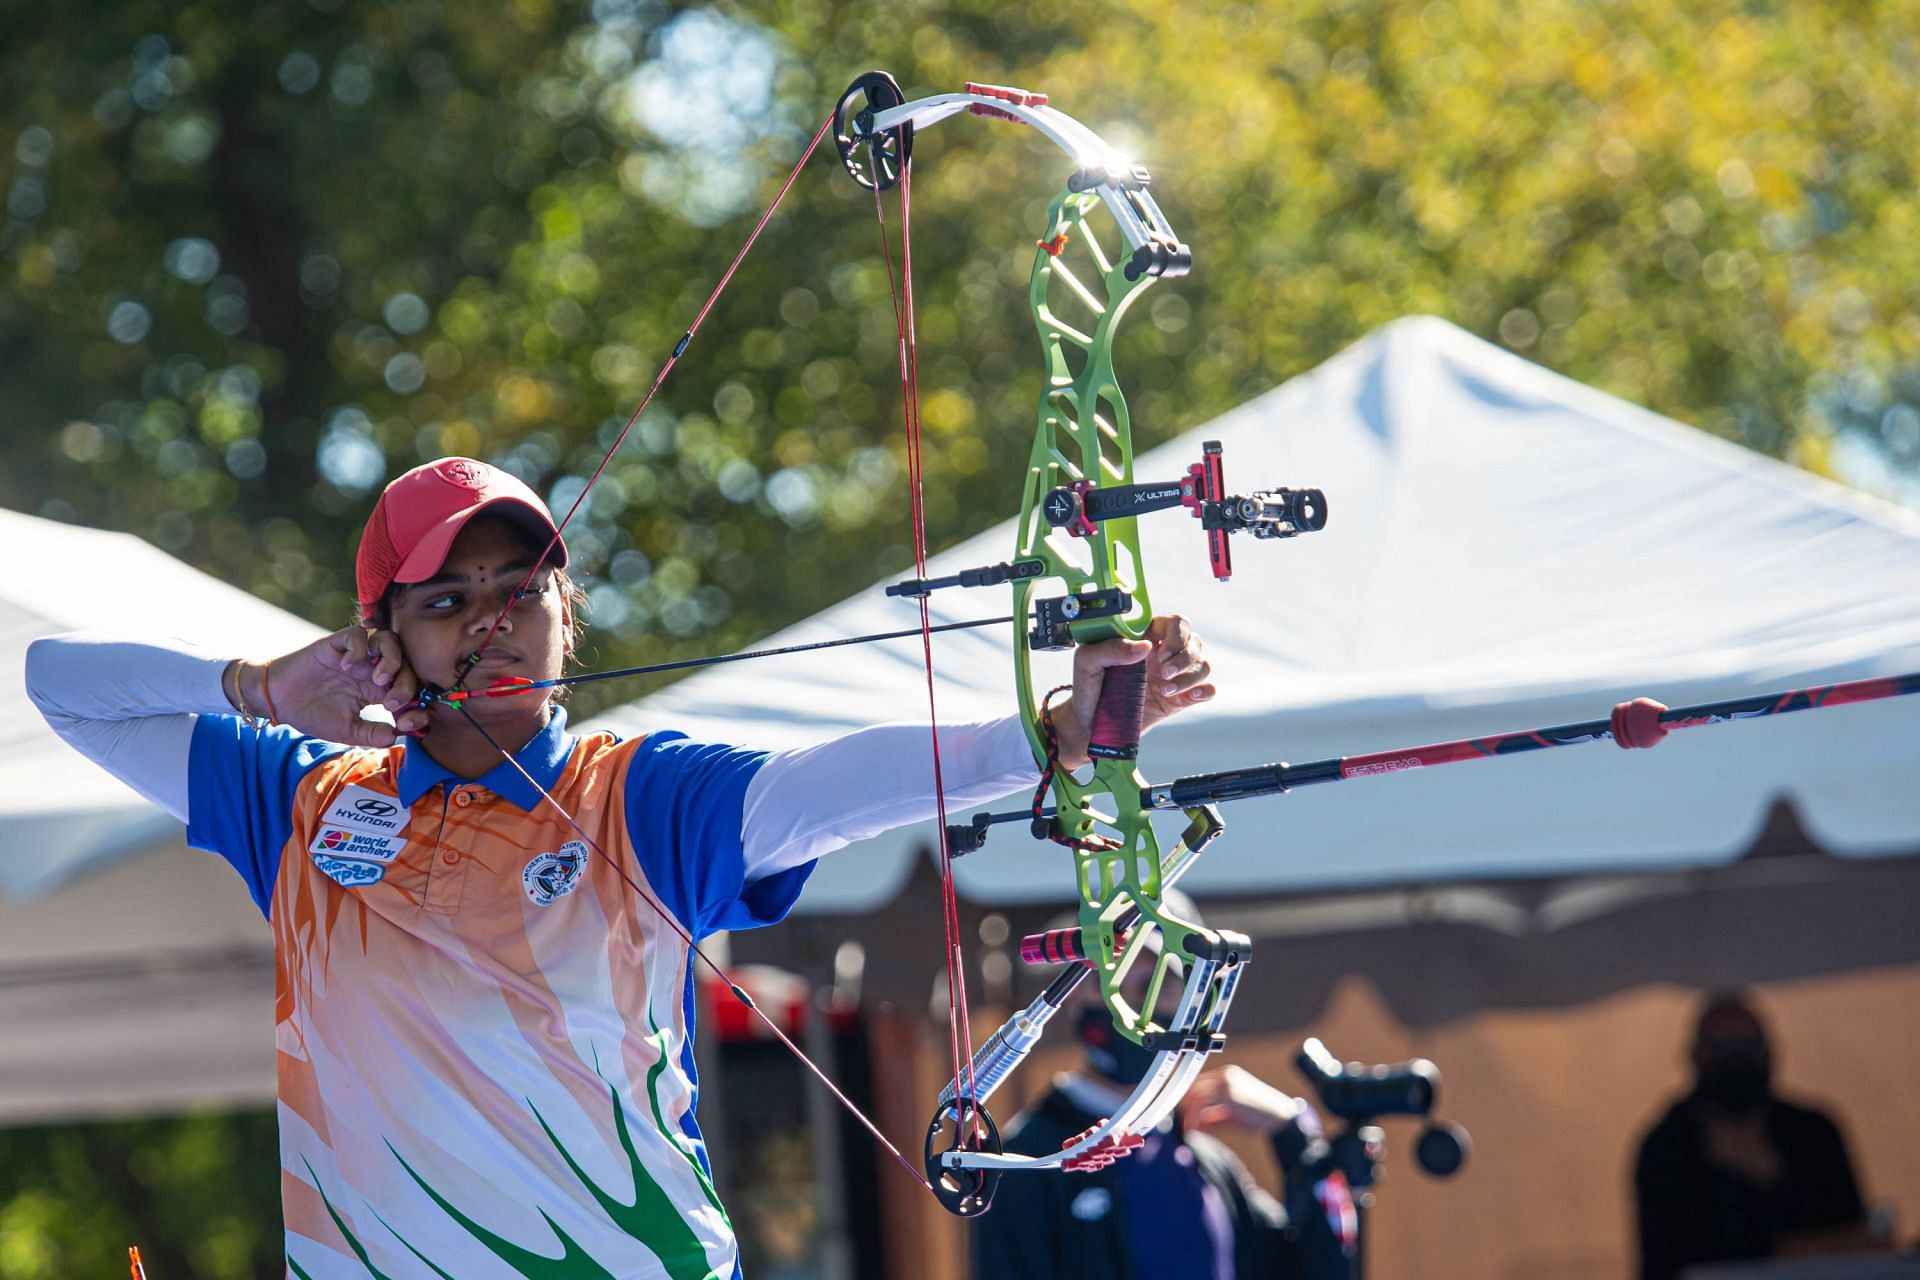 2021 Hyundai World Archery Championships, Yankton, South Dakota, USA